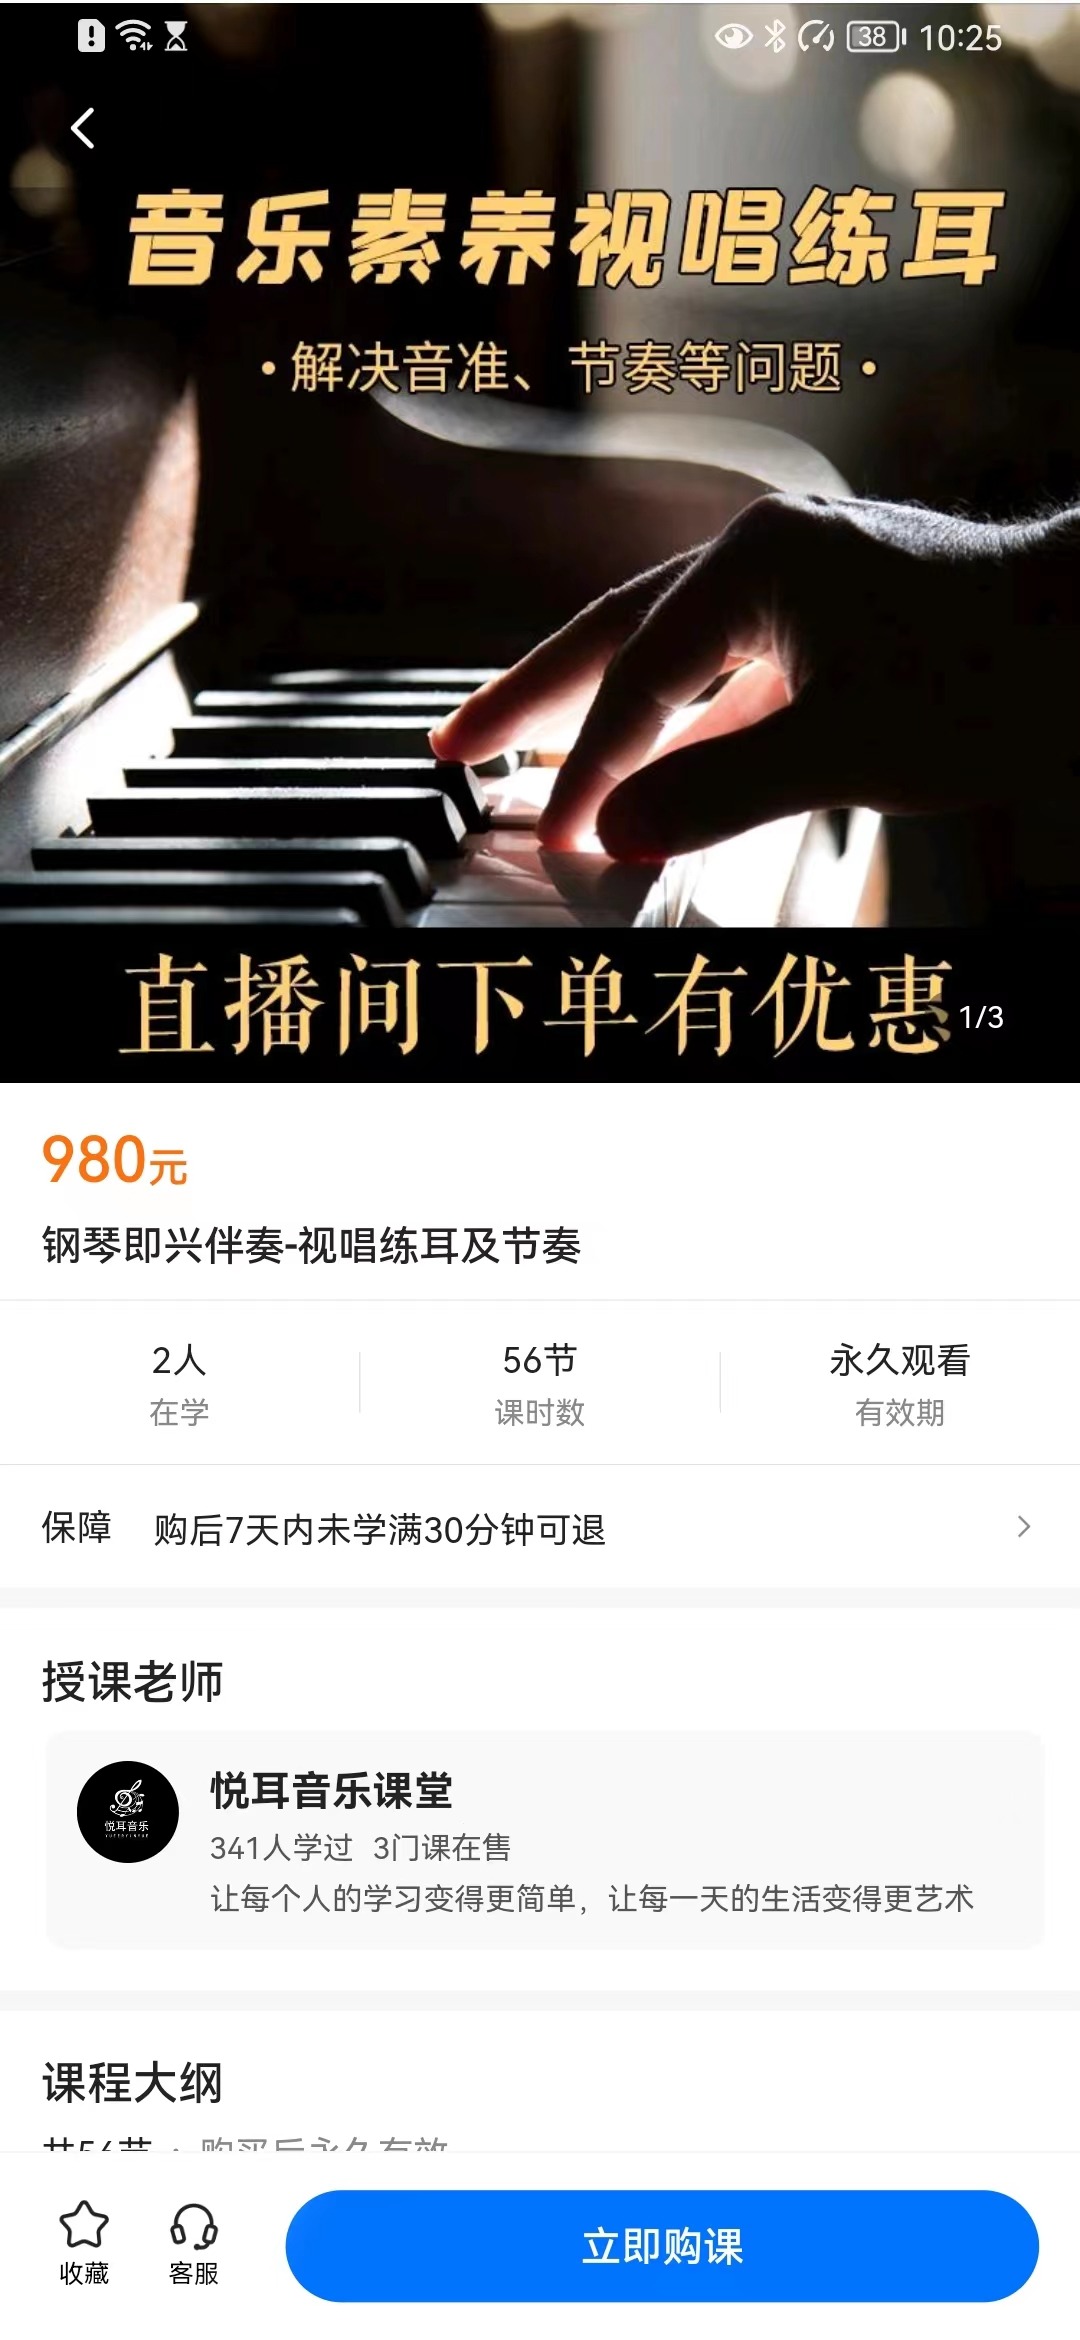 【众筹79.9[红包]·《钢琴即兴伴奏-视唱练耳及节奏》】